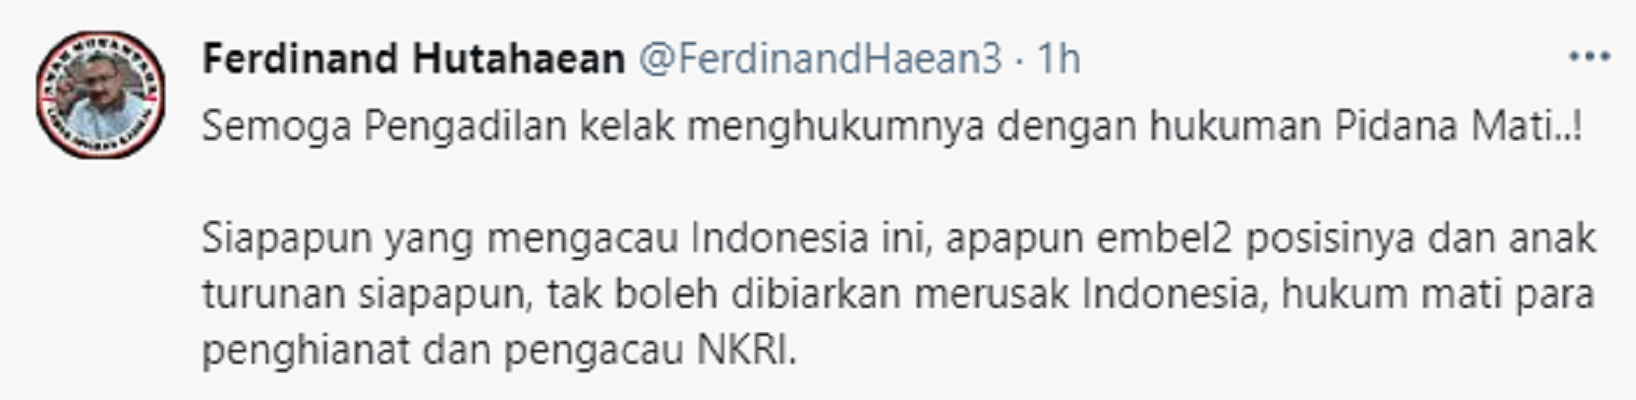 Cuitan Ferdinand Hutahaean soal KKB Papua.